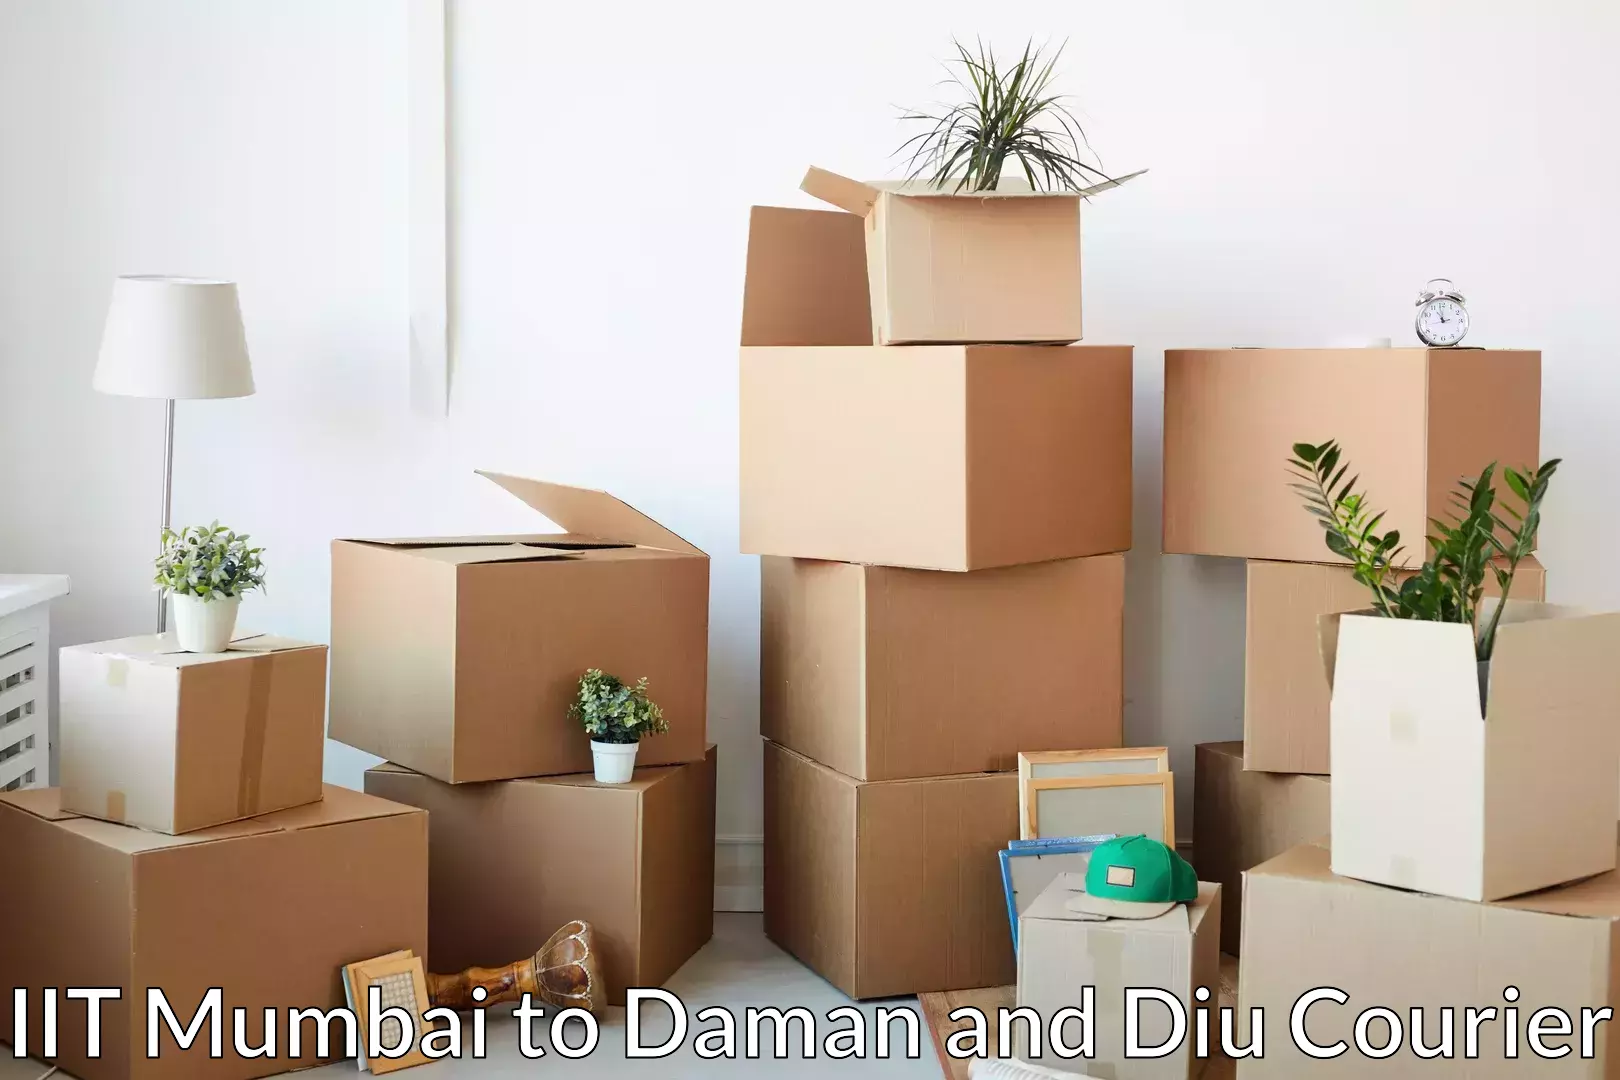 Furniture relocation experts IIT Mumbai to Daman and Diu